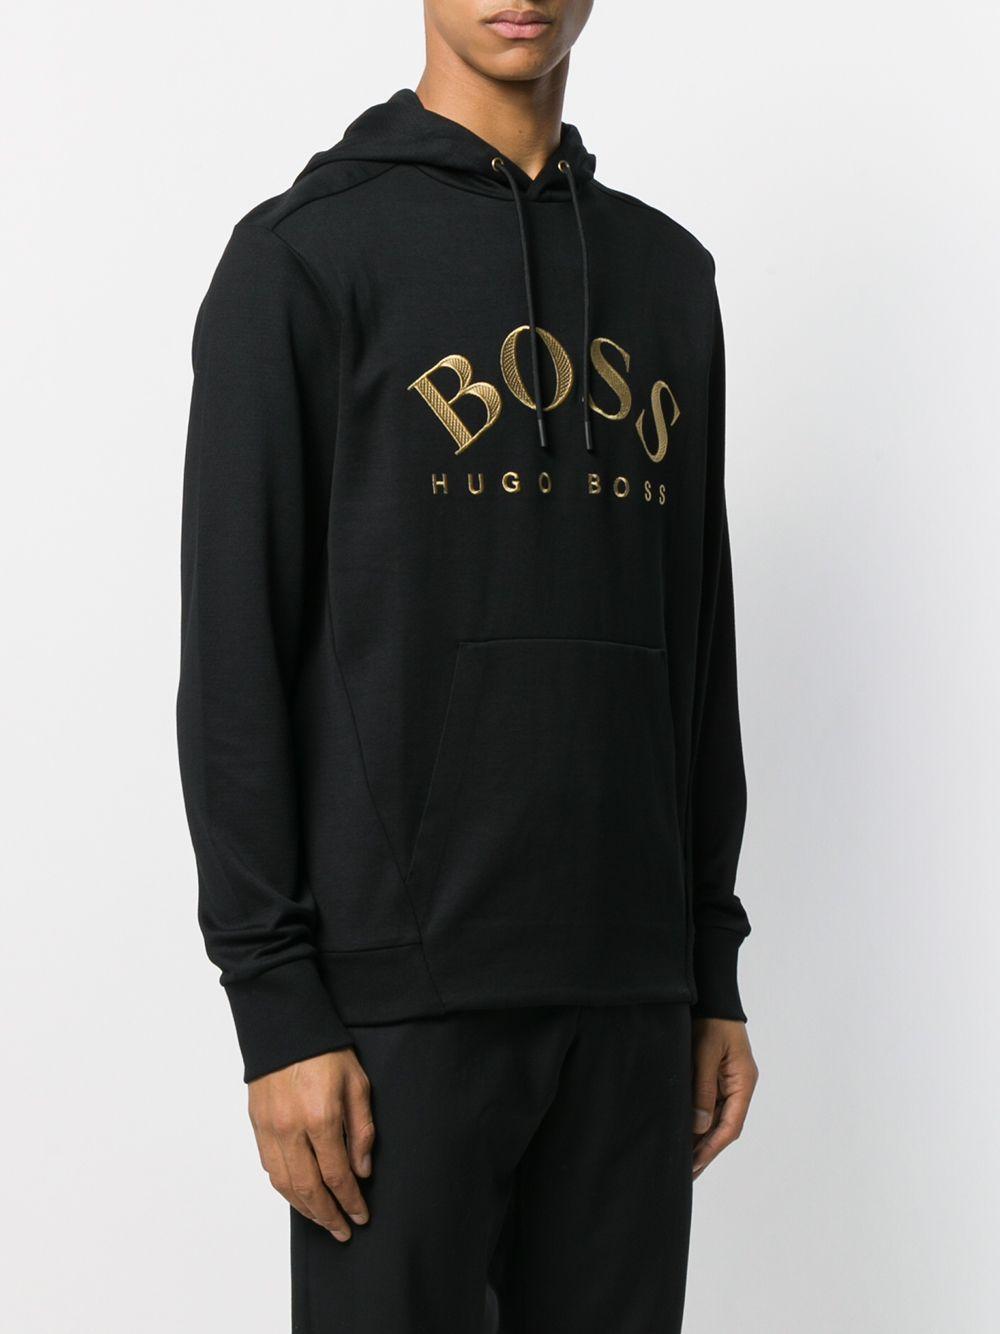 BOSS by HUGO BOSS Curved Logo Soody Hoodie in Black for Men | Lyst